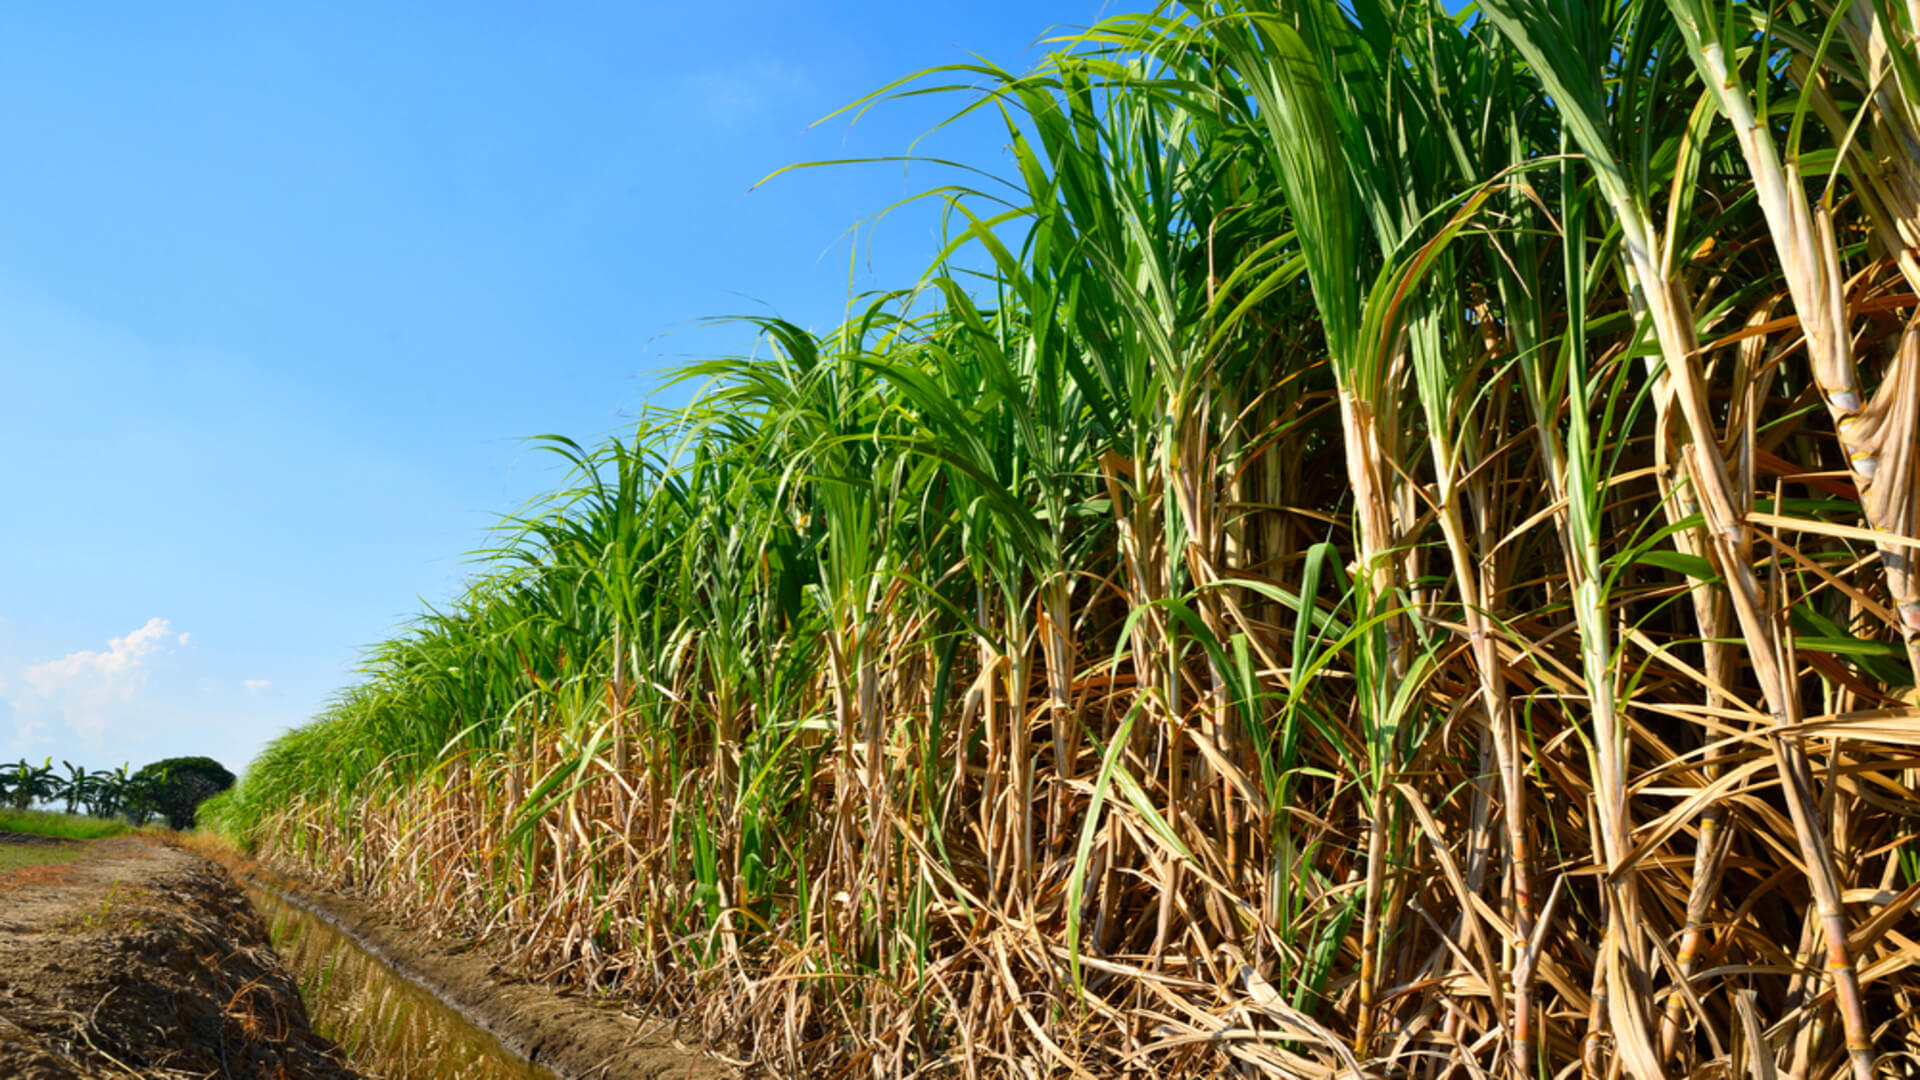 A sugarcane field at Grove Farm